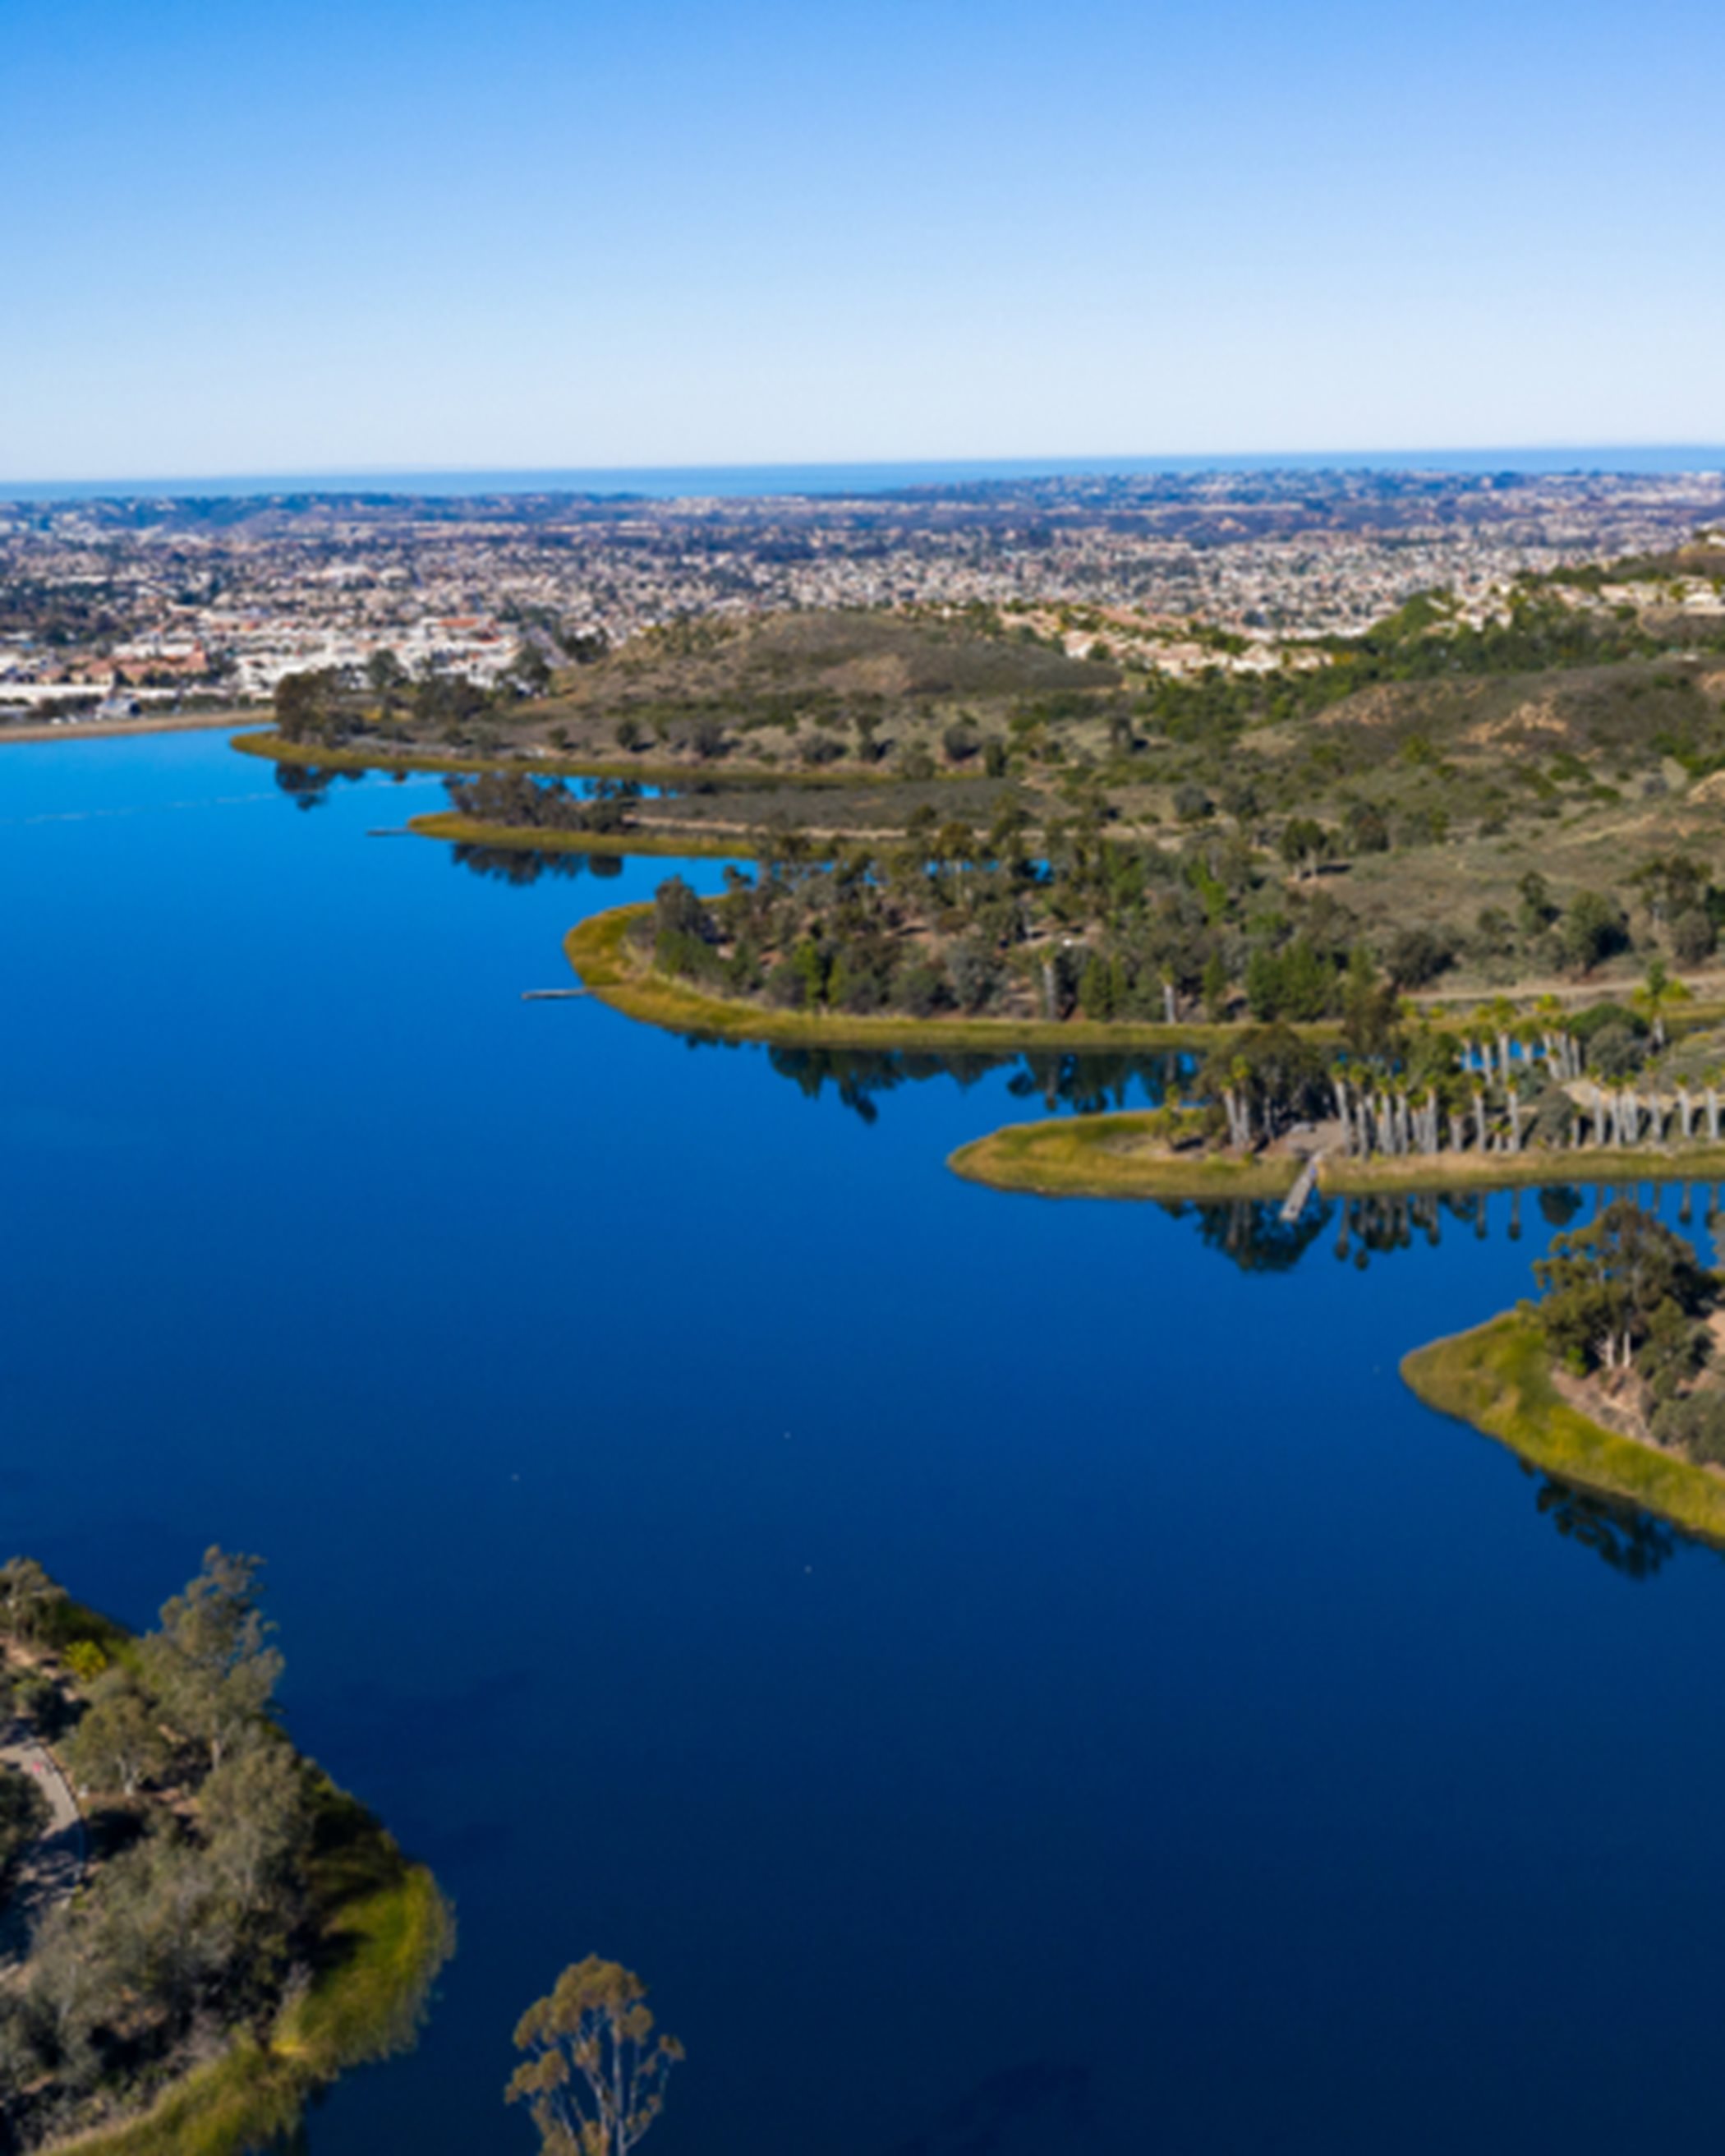 The Miramar Reservoir